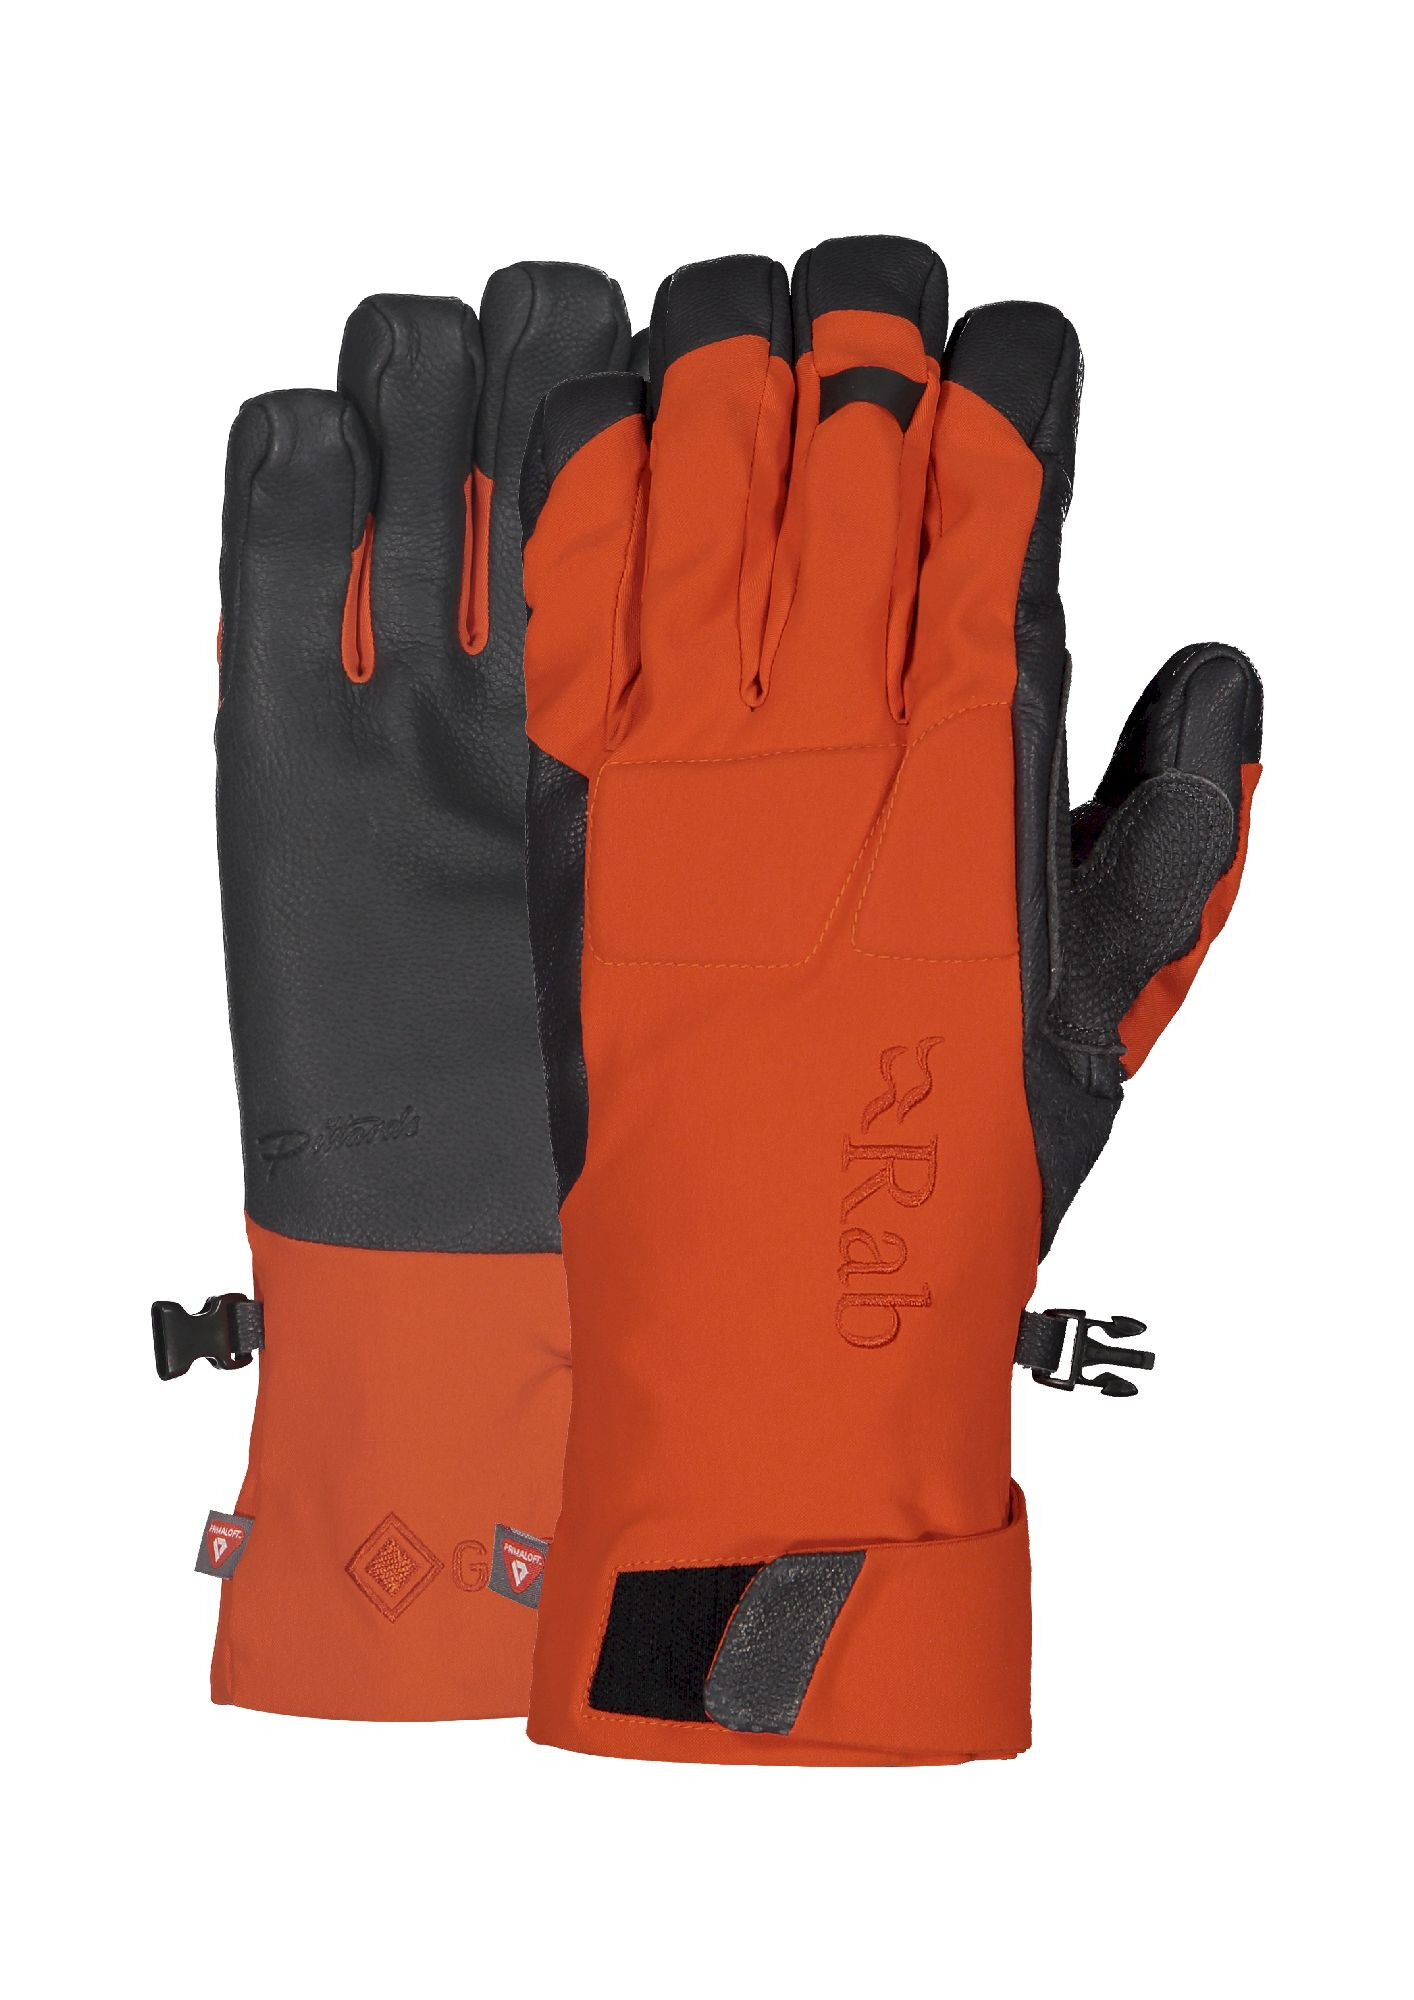 Rab Fulcrum GTX Gloves - Climbing gloves